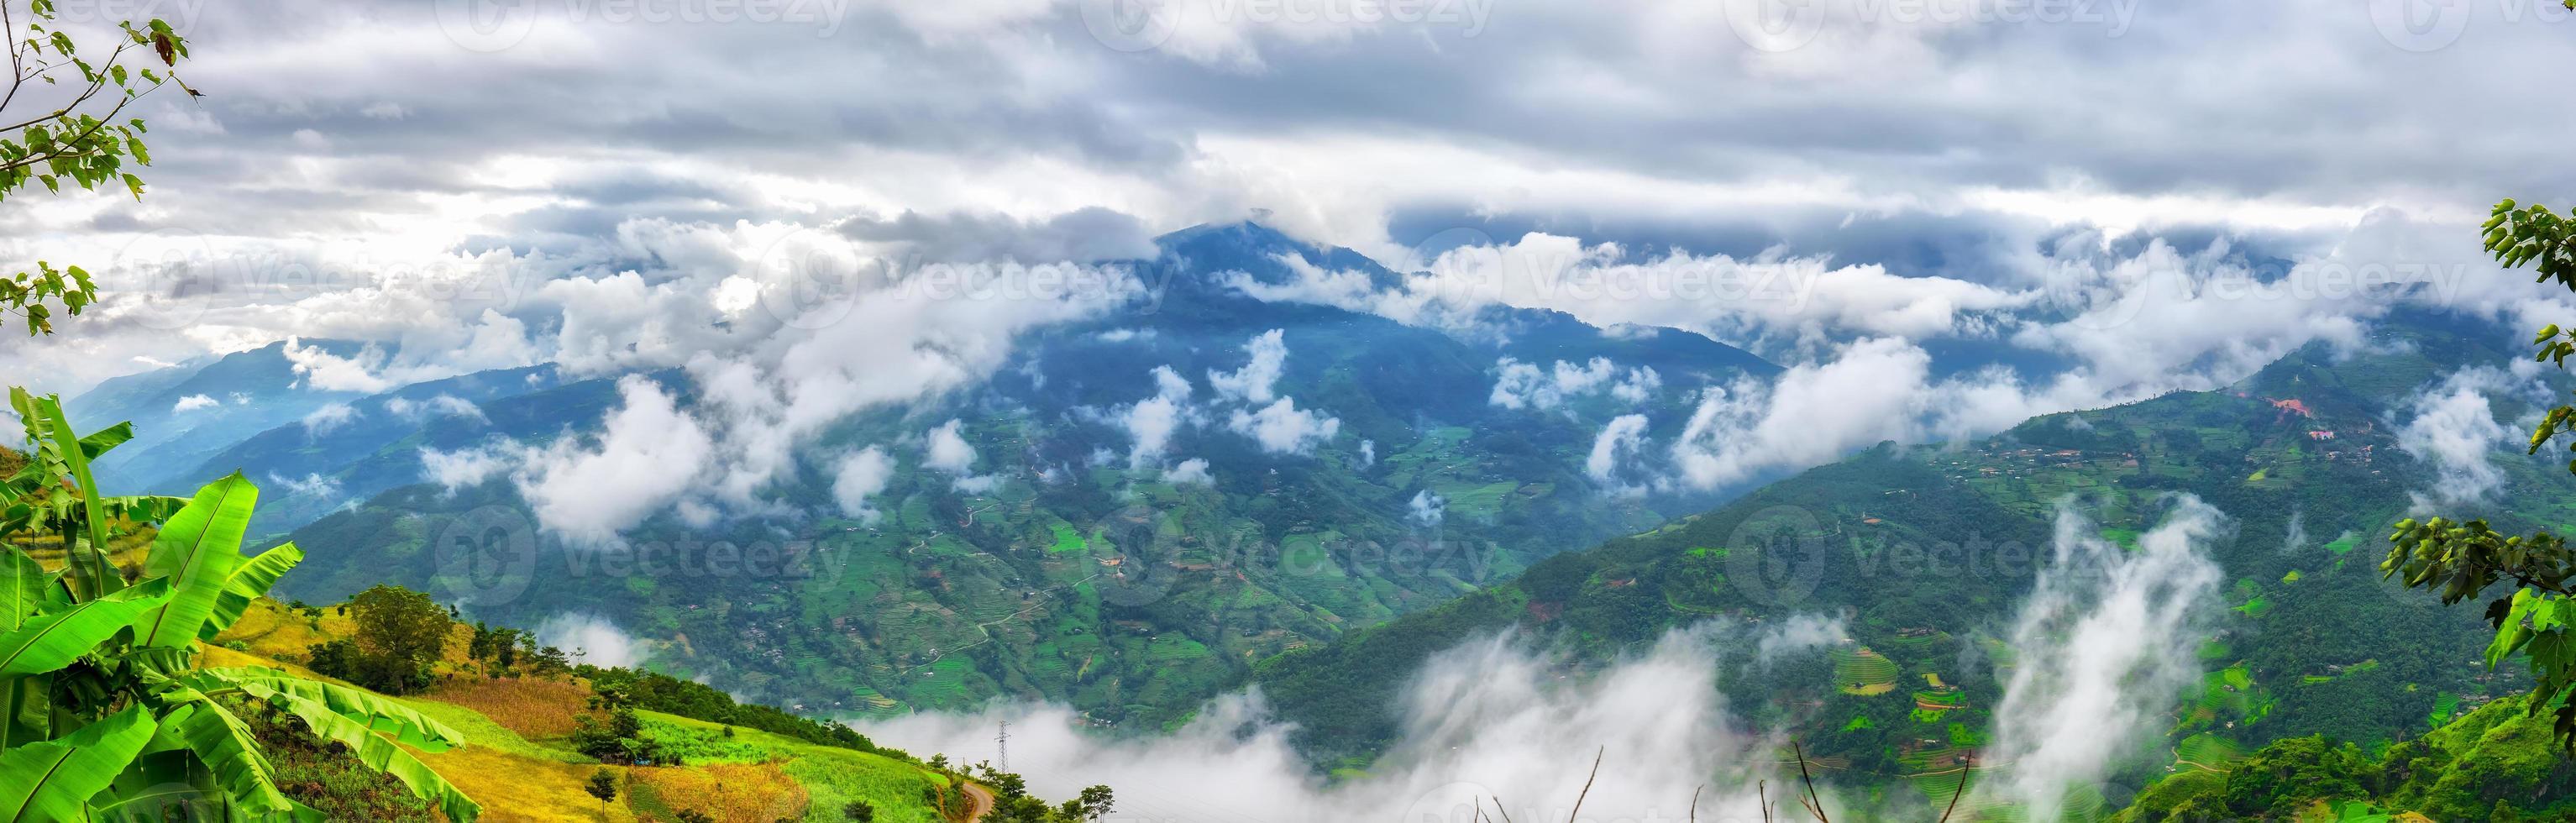 nuages et montagne nord-ouest du vietnam photo